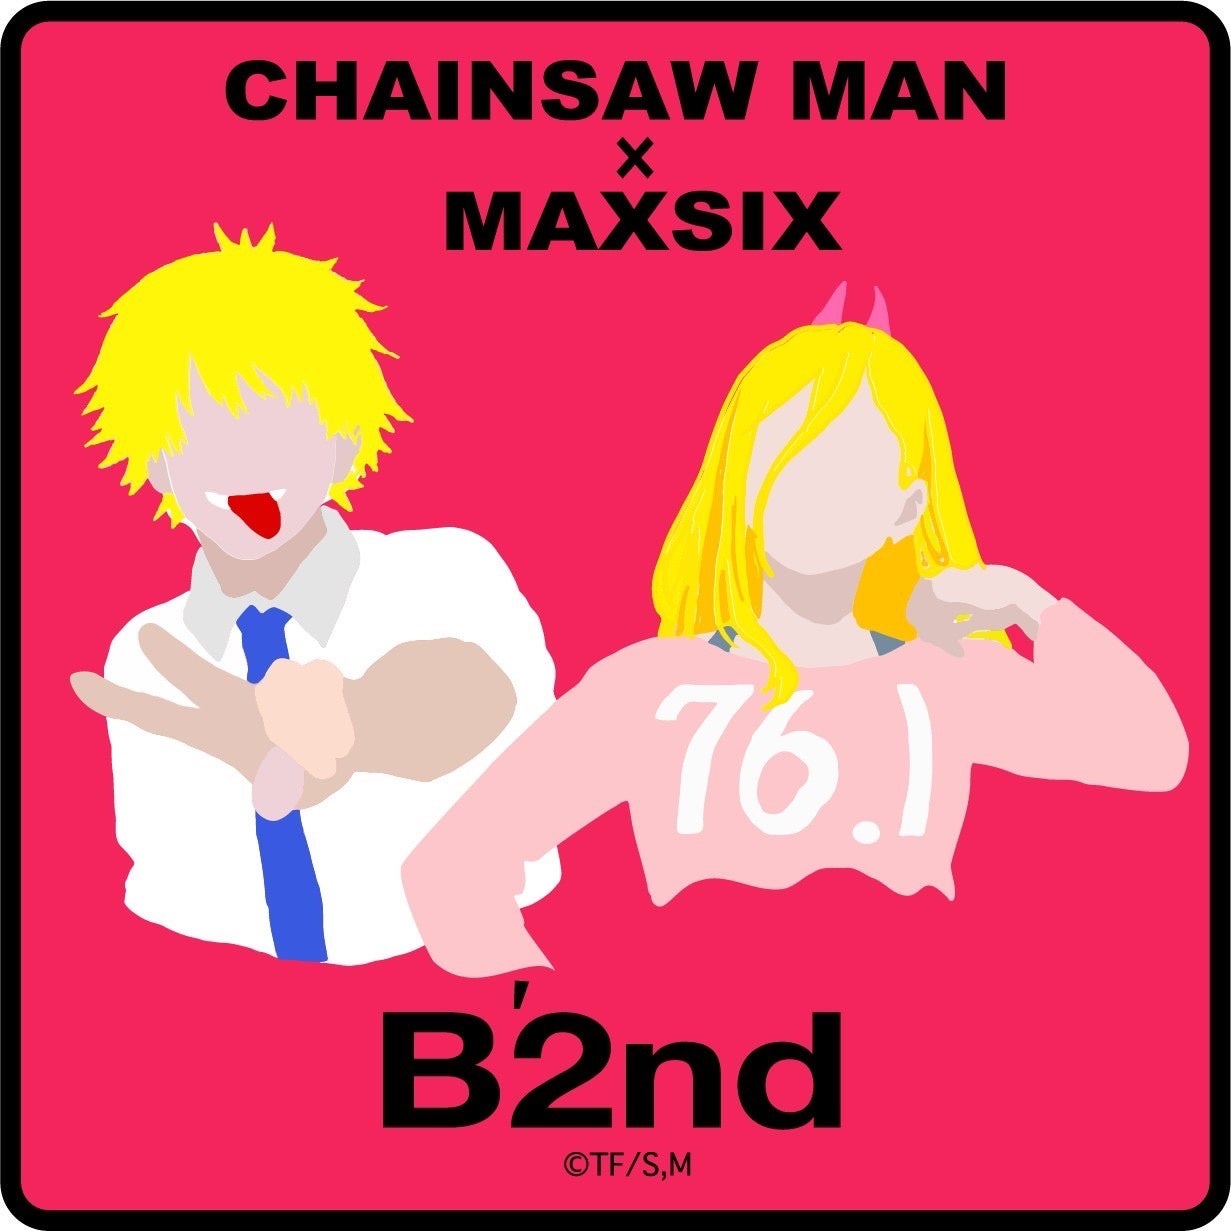 セレクトショップ「B’2 nd」がチェンソーマンとMAXSIXのコラボTシャツ&ボクサーパンツをリリース！のサブ画像1